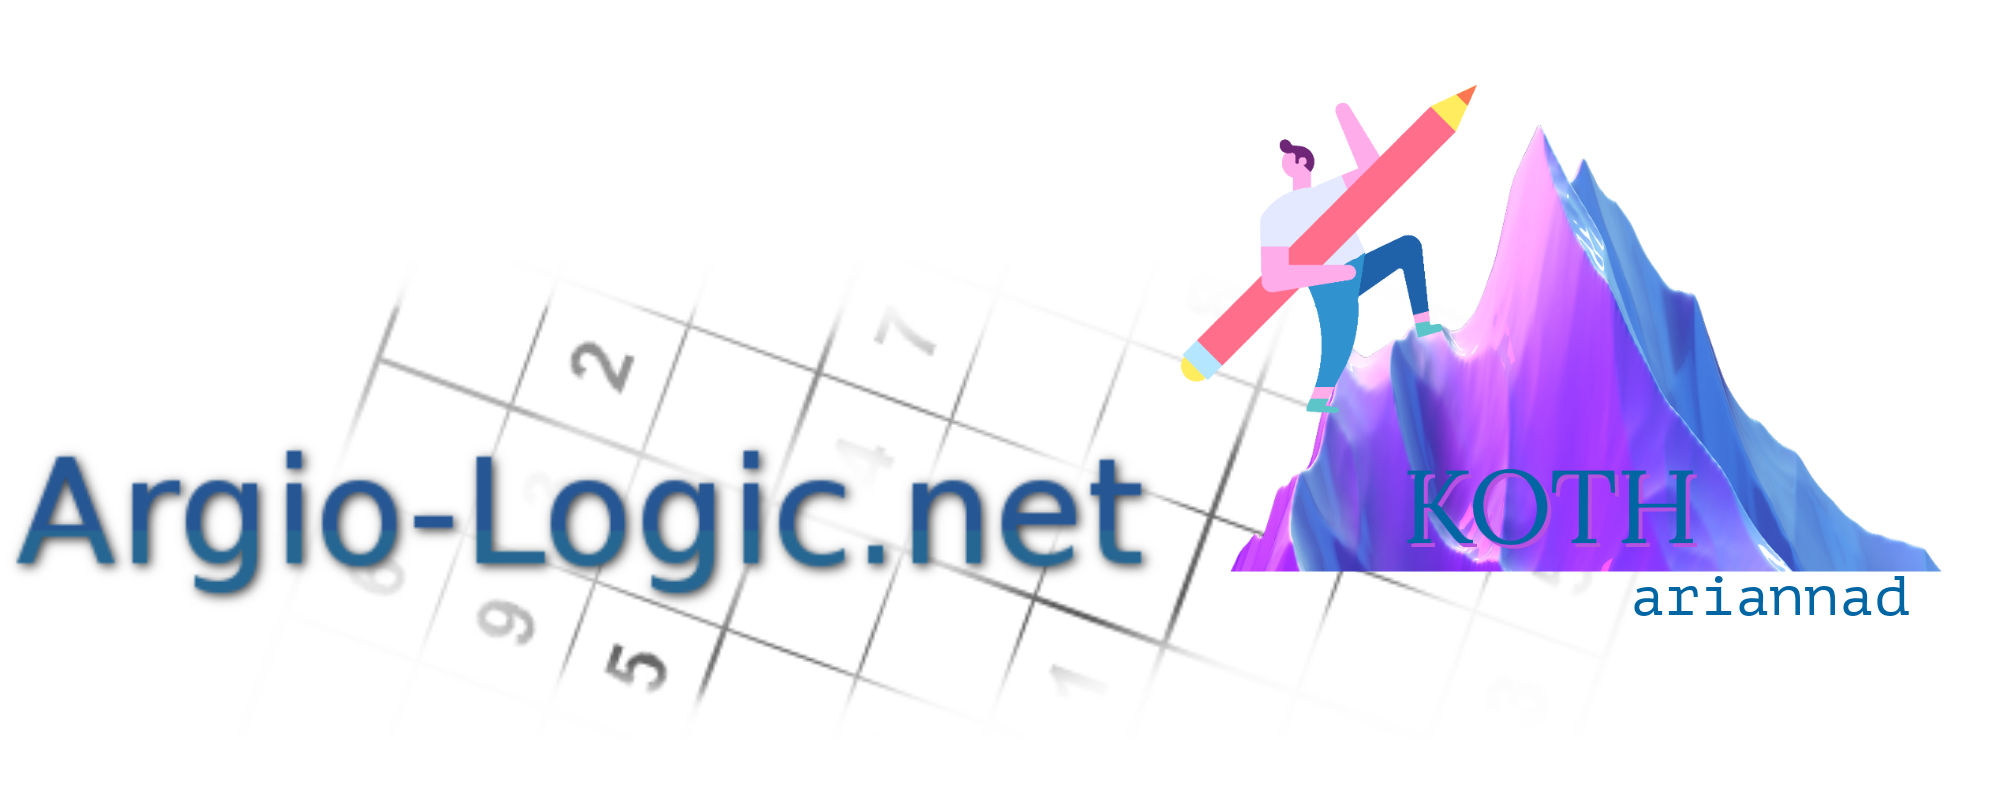 Logo Argio-logic.net/koth